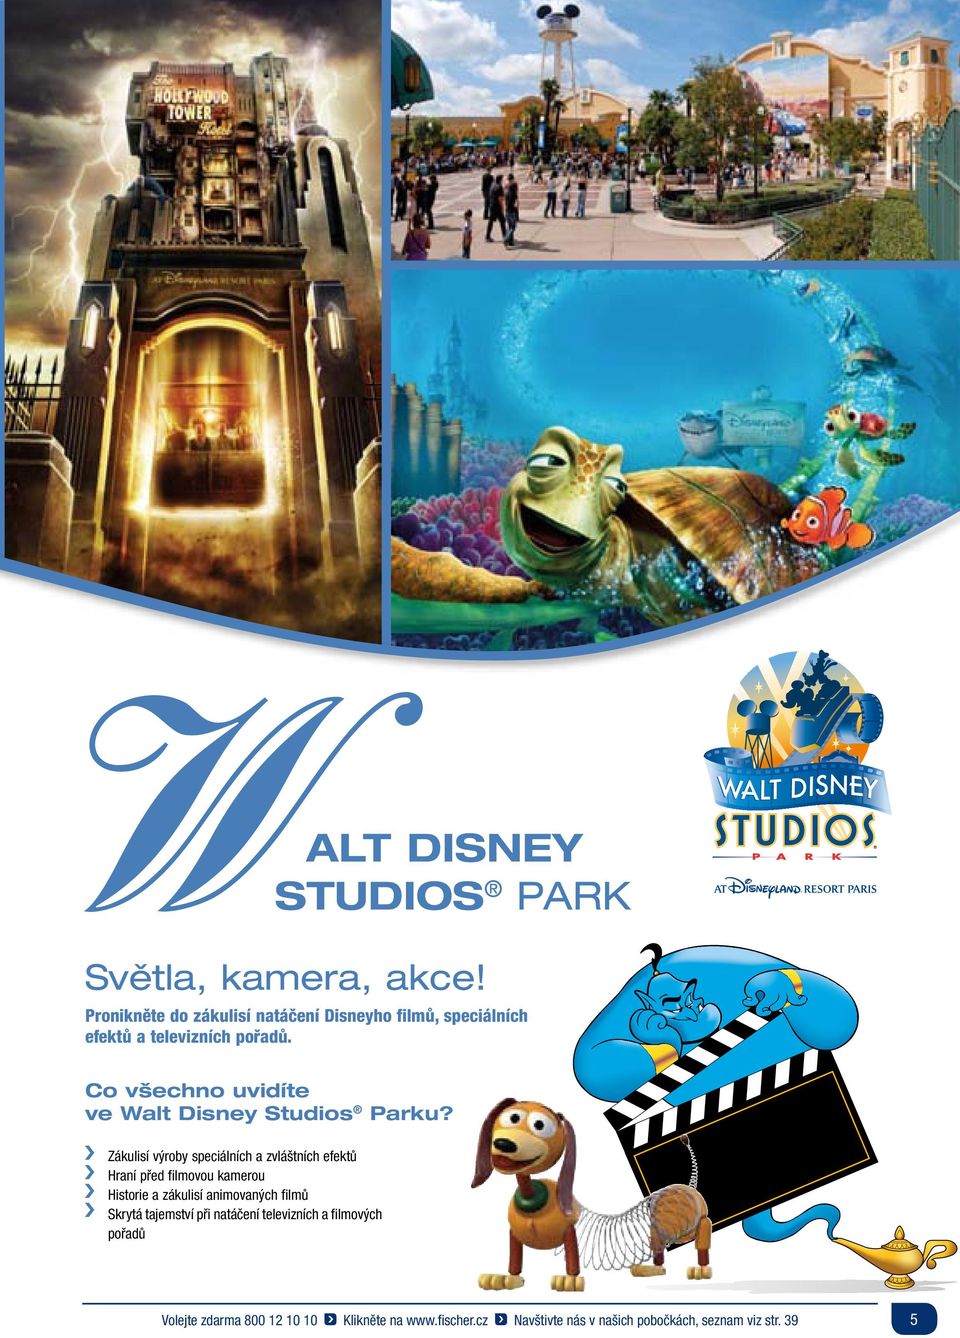 Co všechno uvidíte ve Walt Disney Studios Parku?